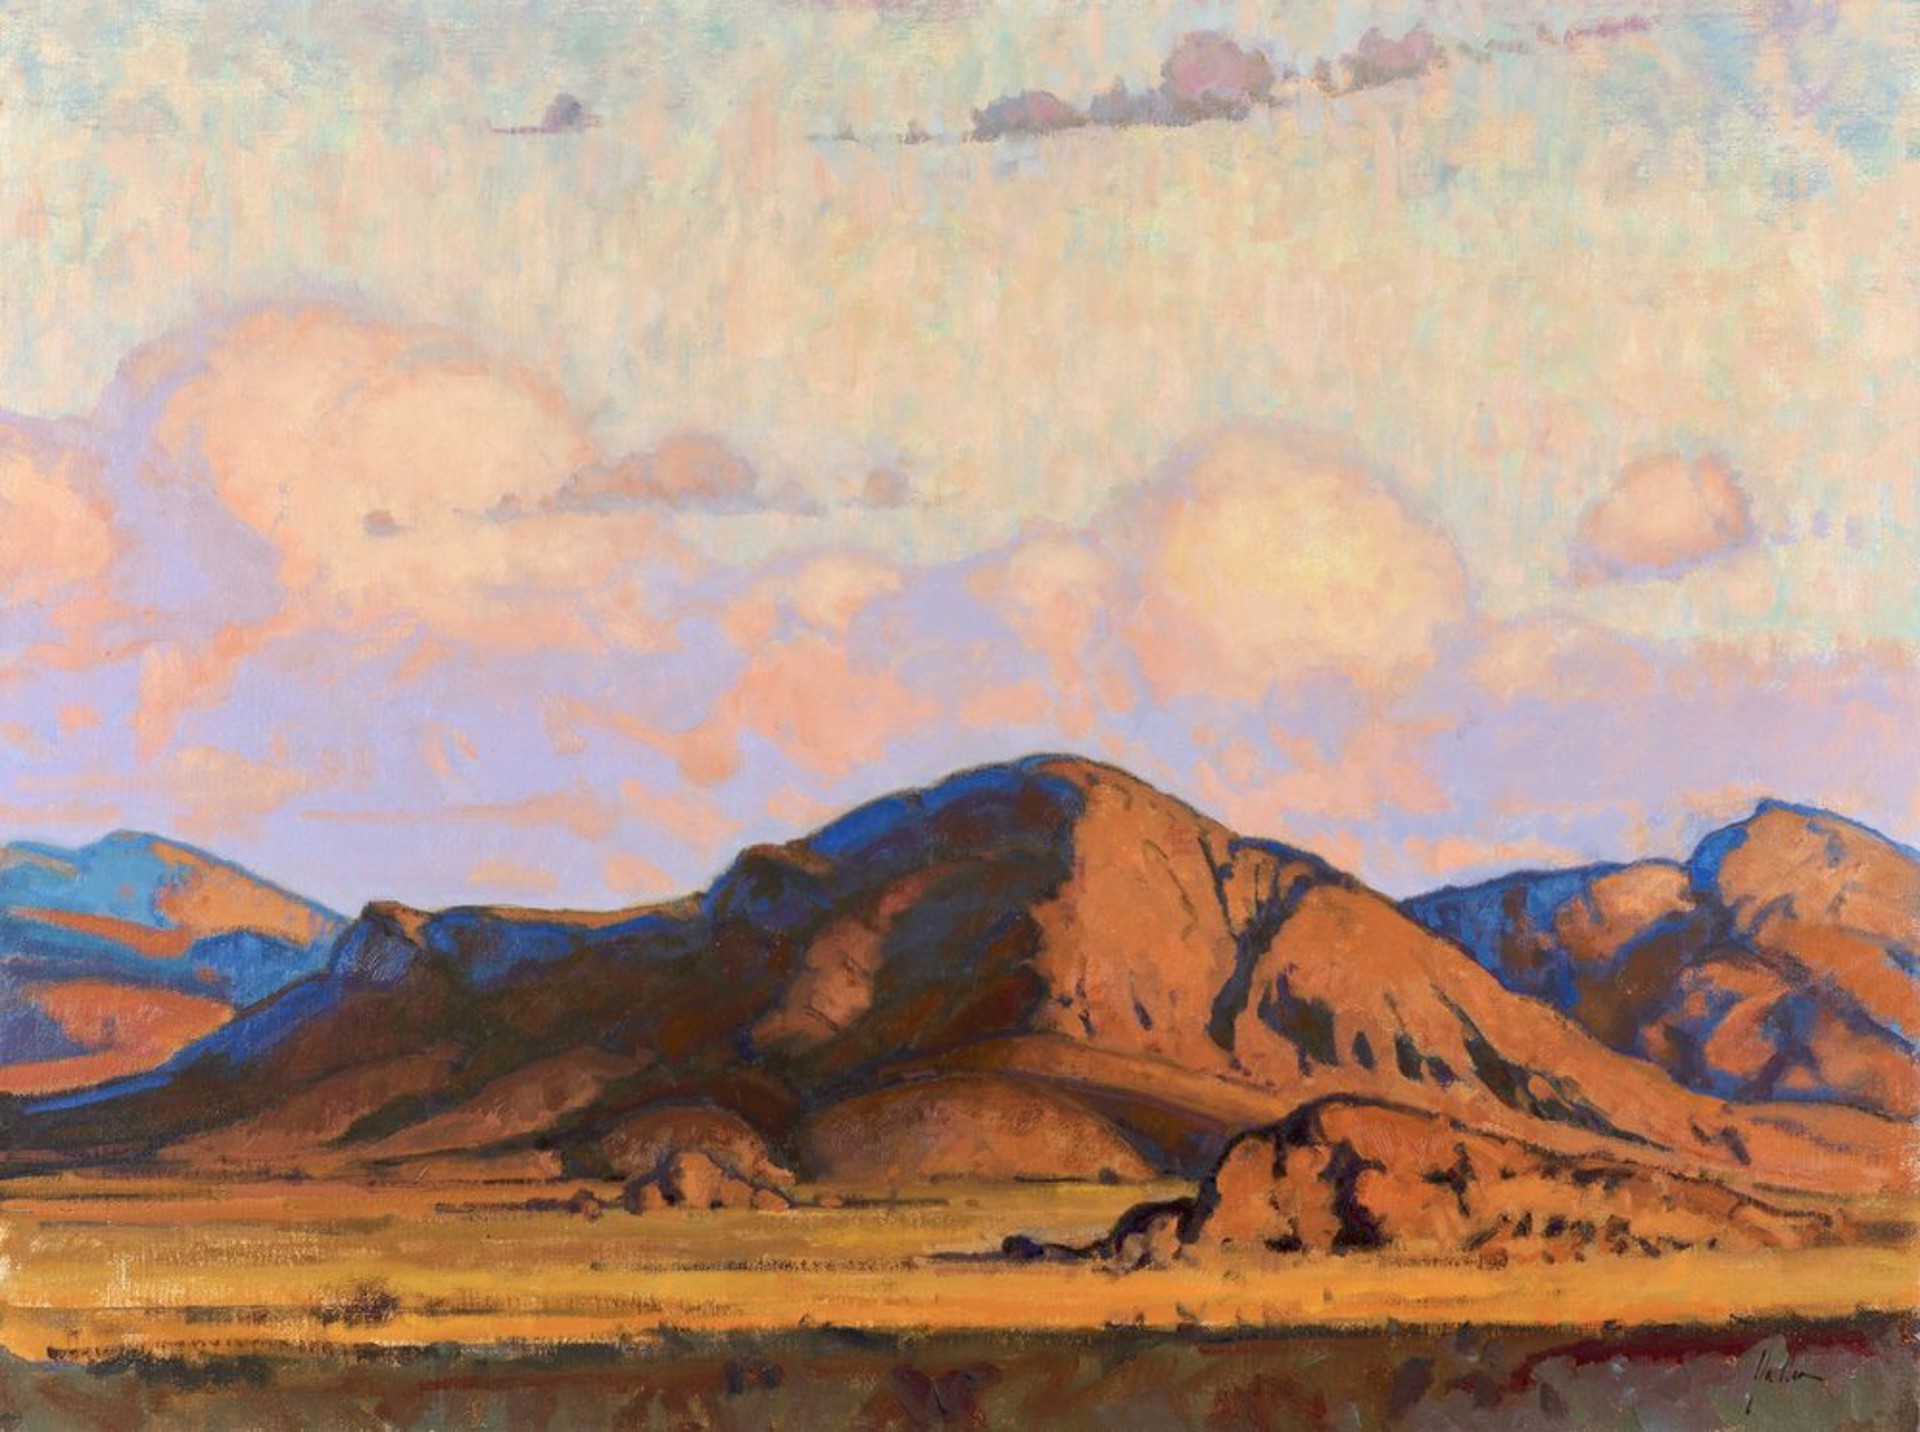 Elemental Desert by Bill Gallen